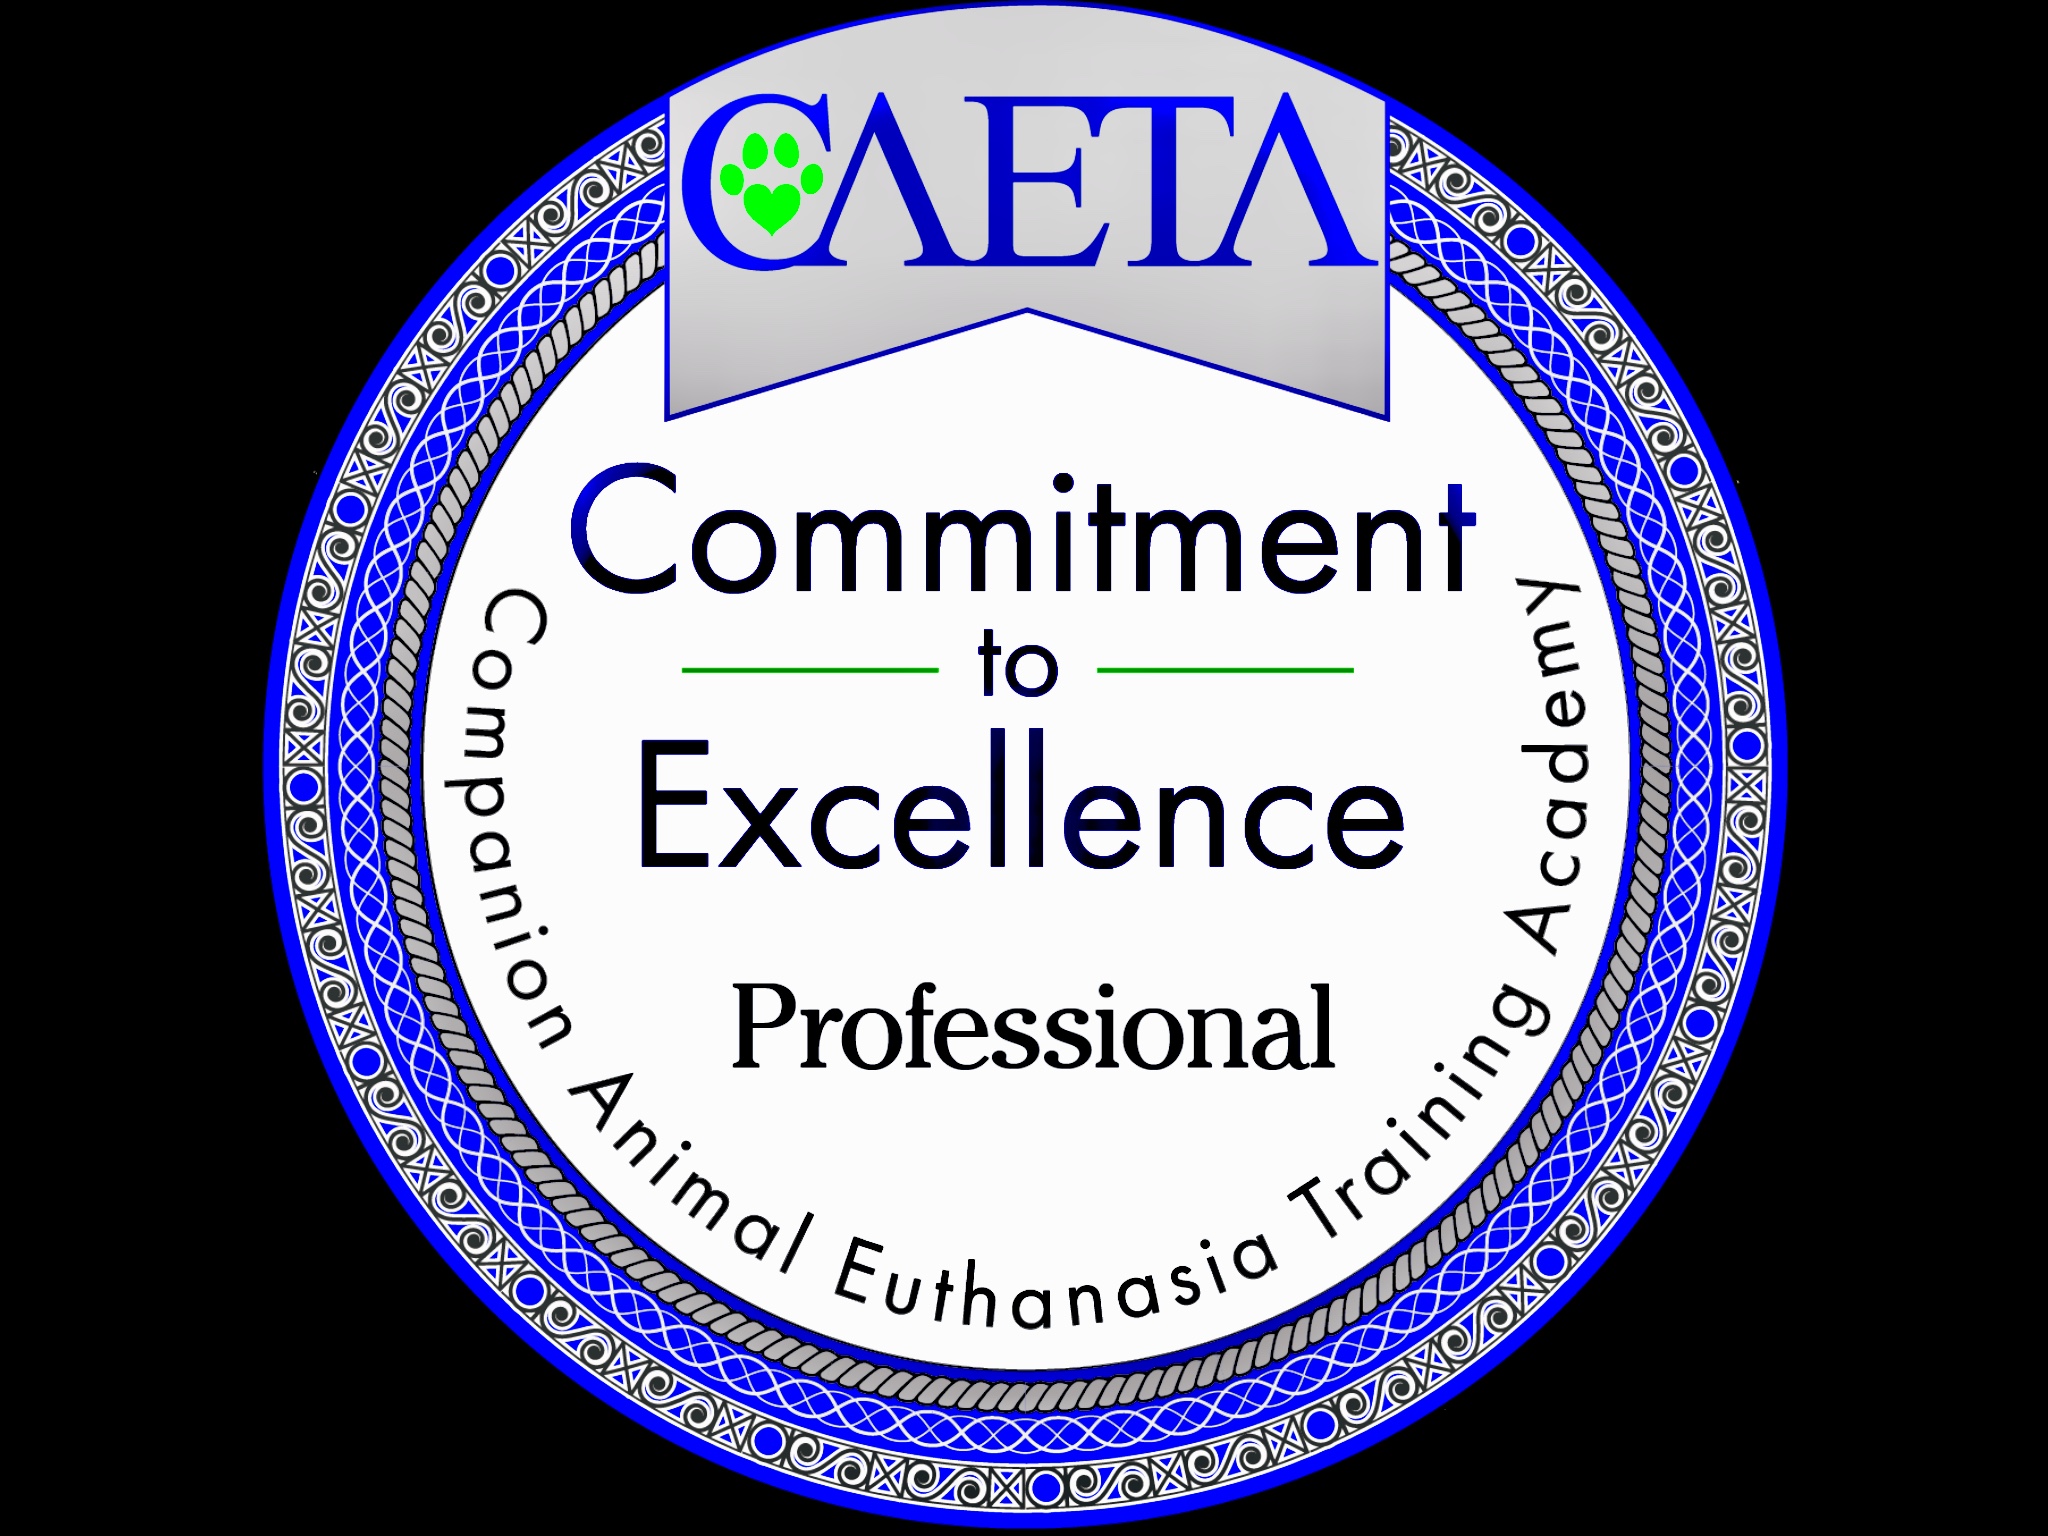 CAETA logo revised